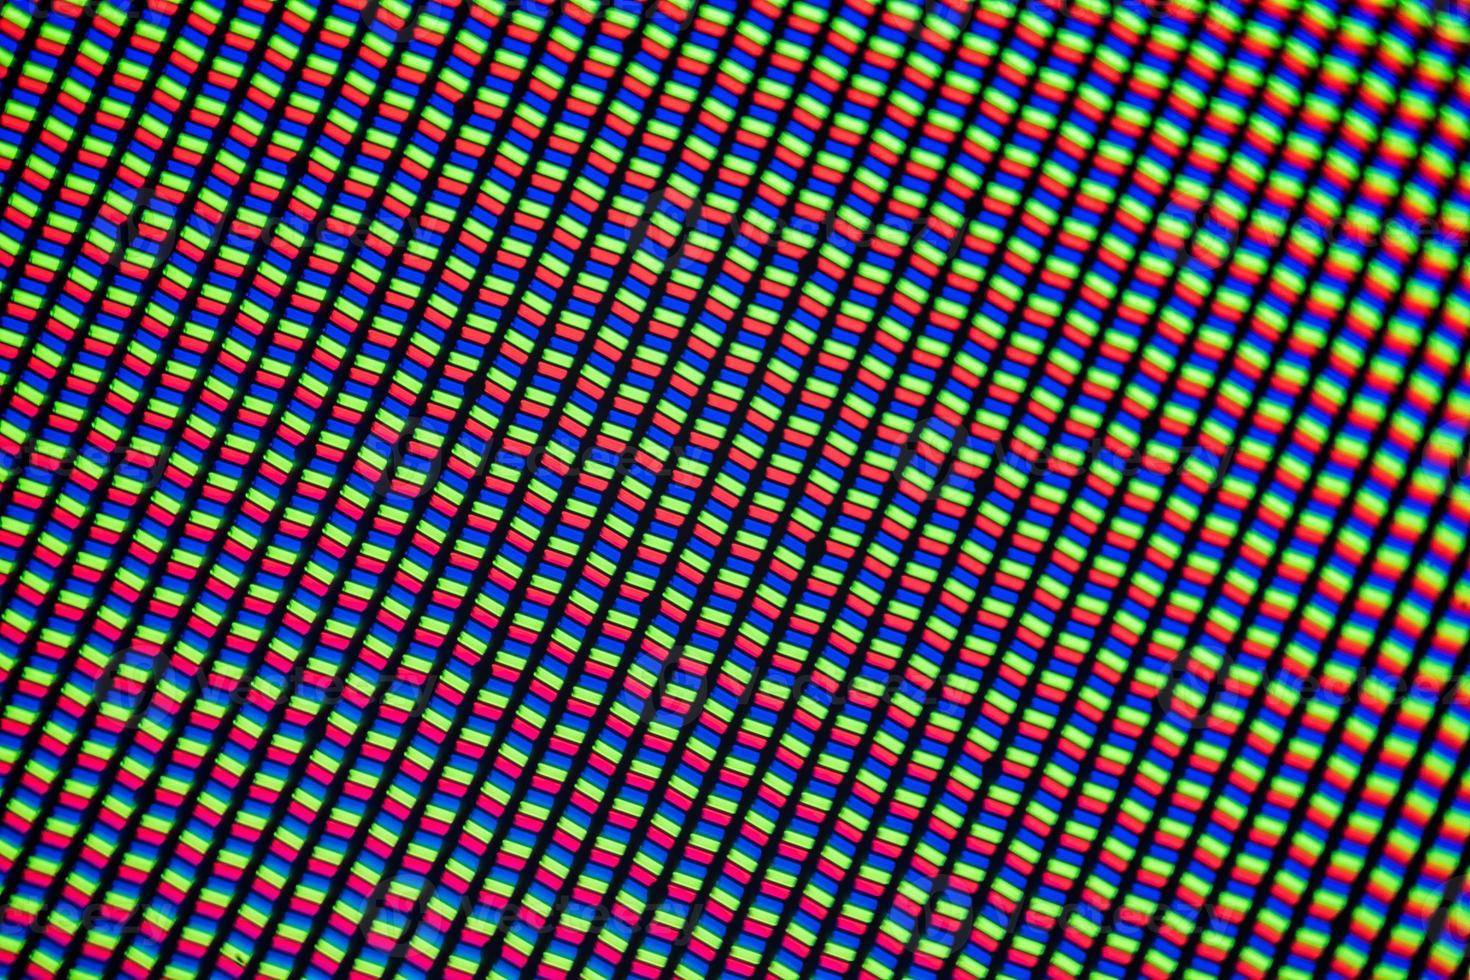 ljusmikrofotografi av en mobil lcd-skärm sedd genom ett mikroskop foto